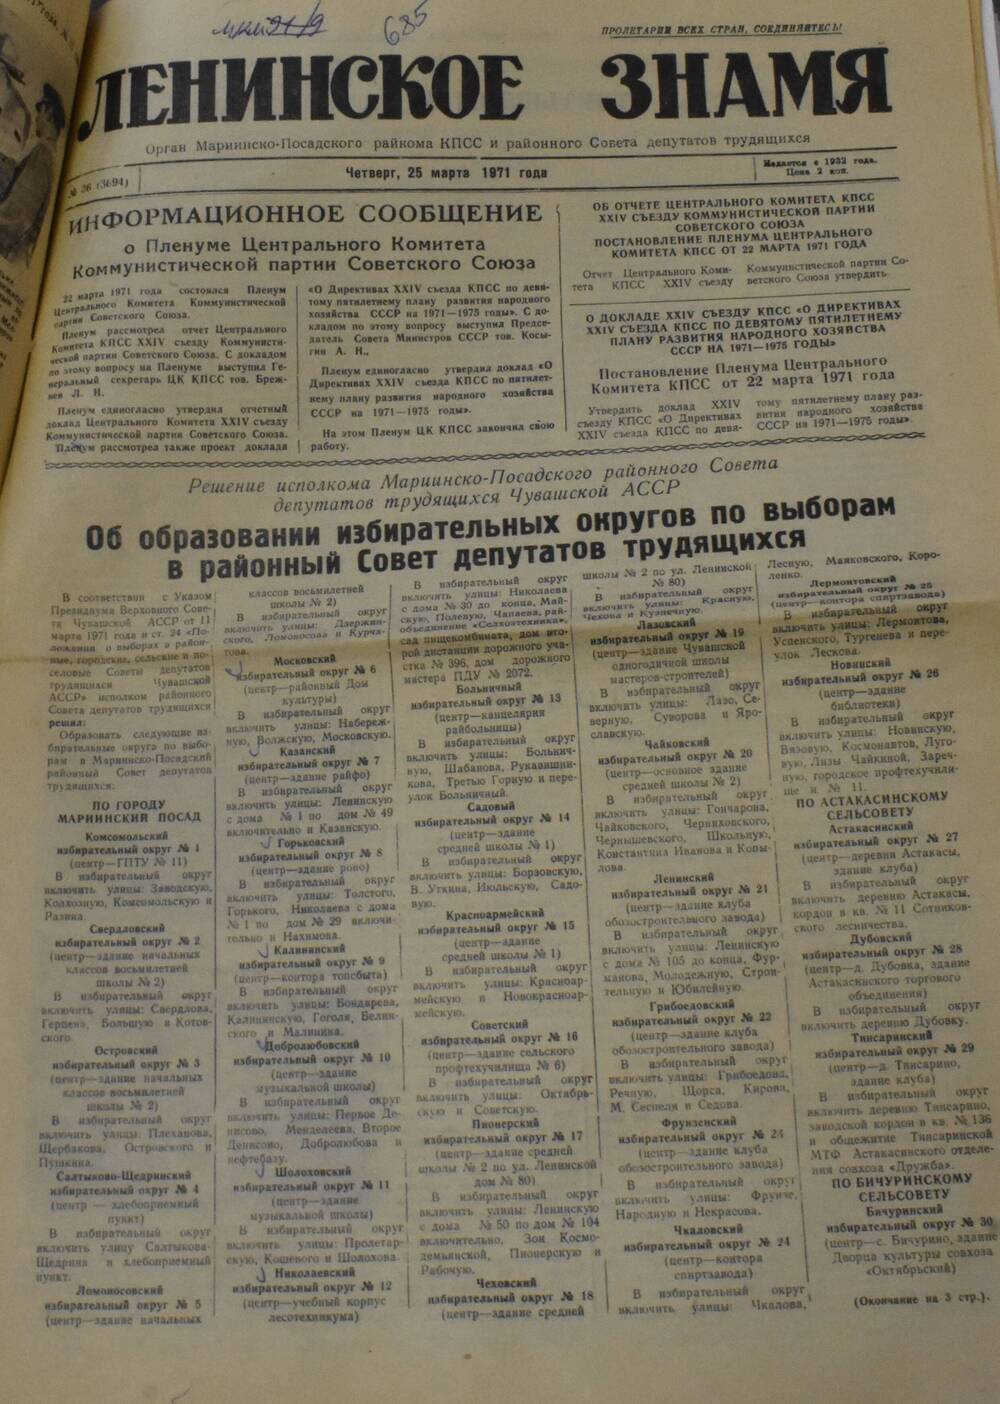 Газета Ленинское знамя № 36 от 25 марта 1971